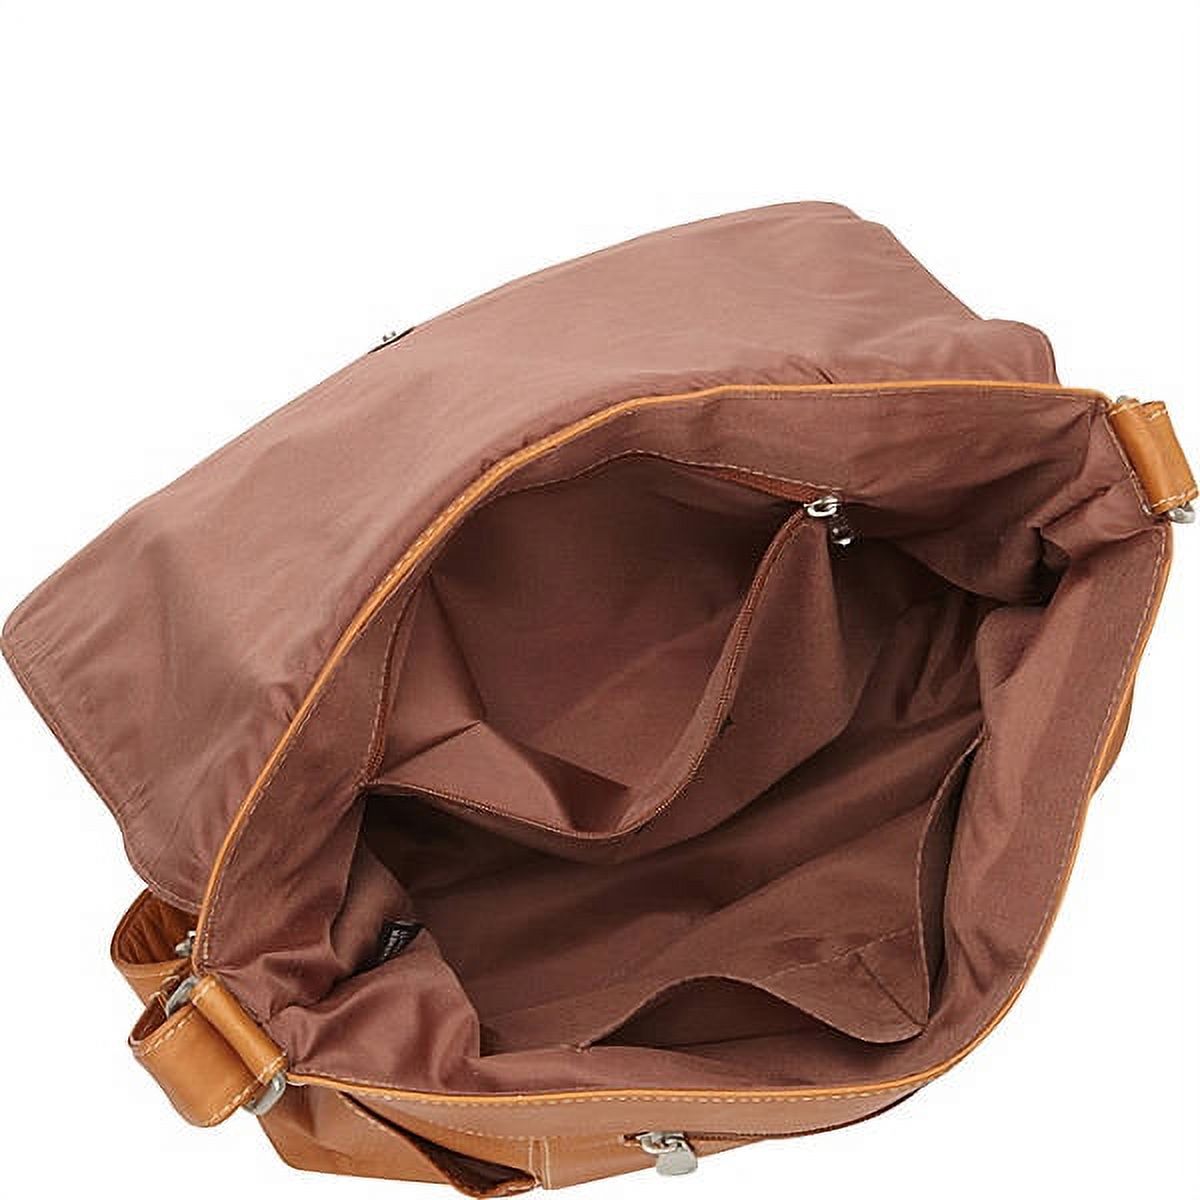 Le Donne Leather Flap Over Shoulder Bag LD-5004 - image 2 of 4